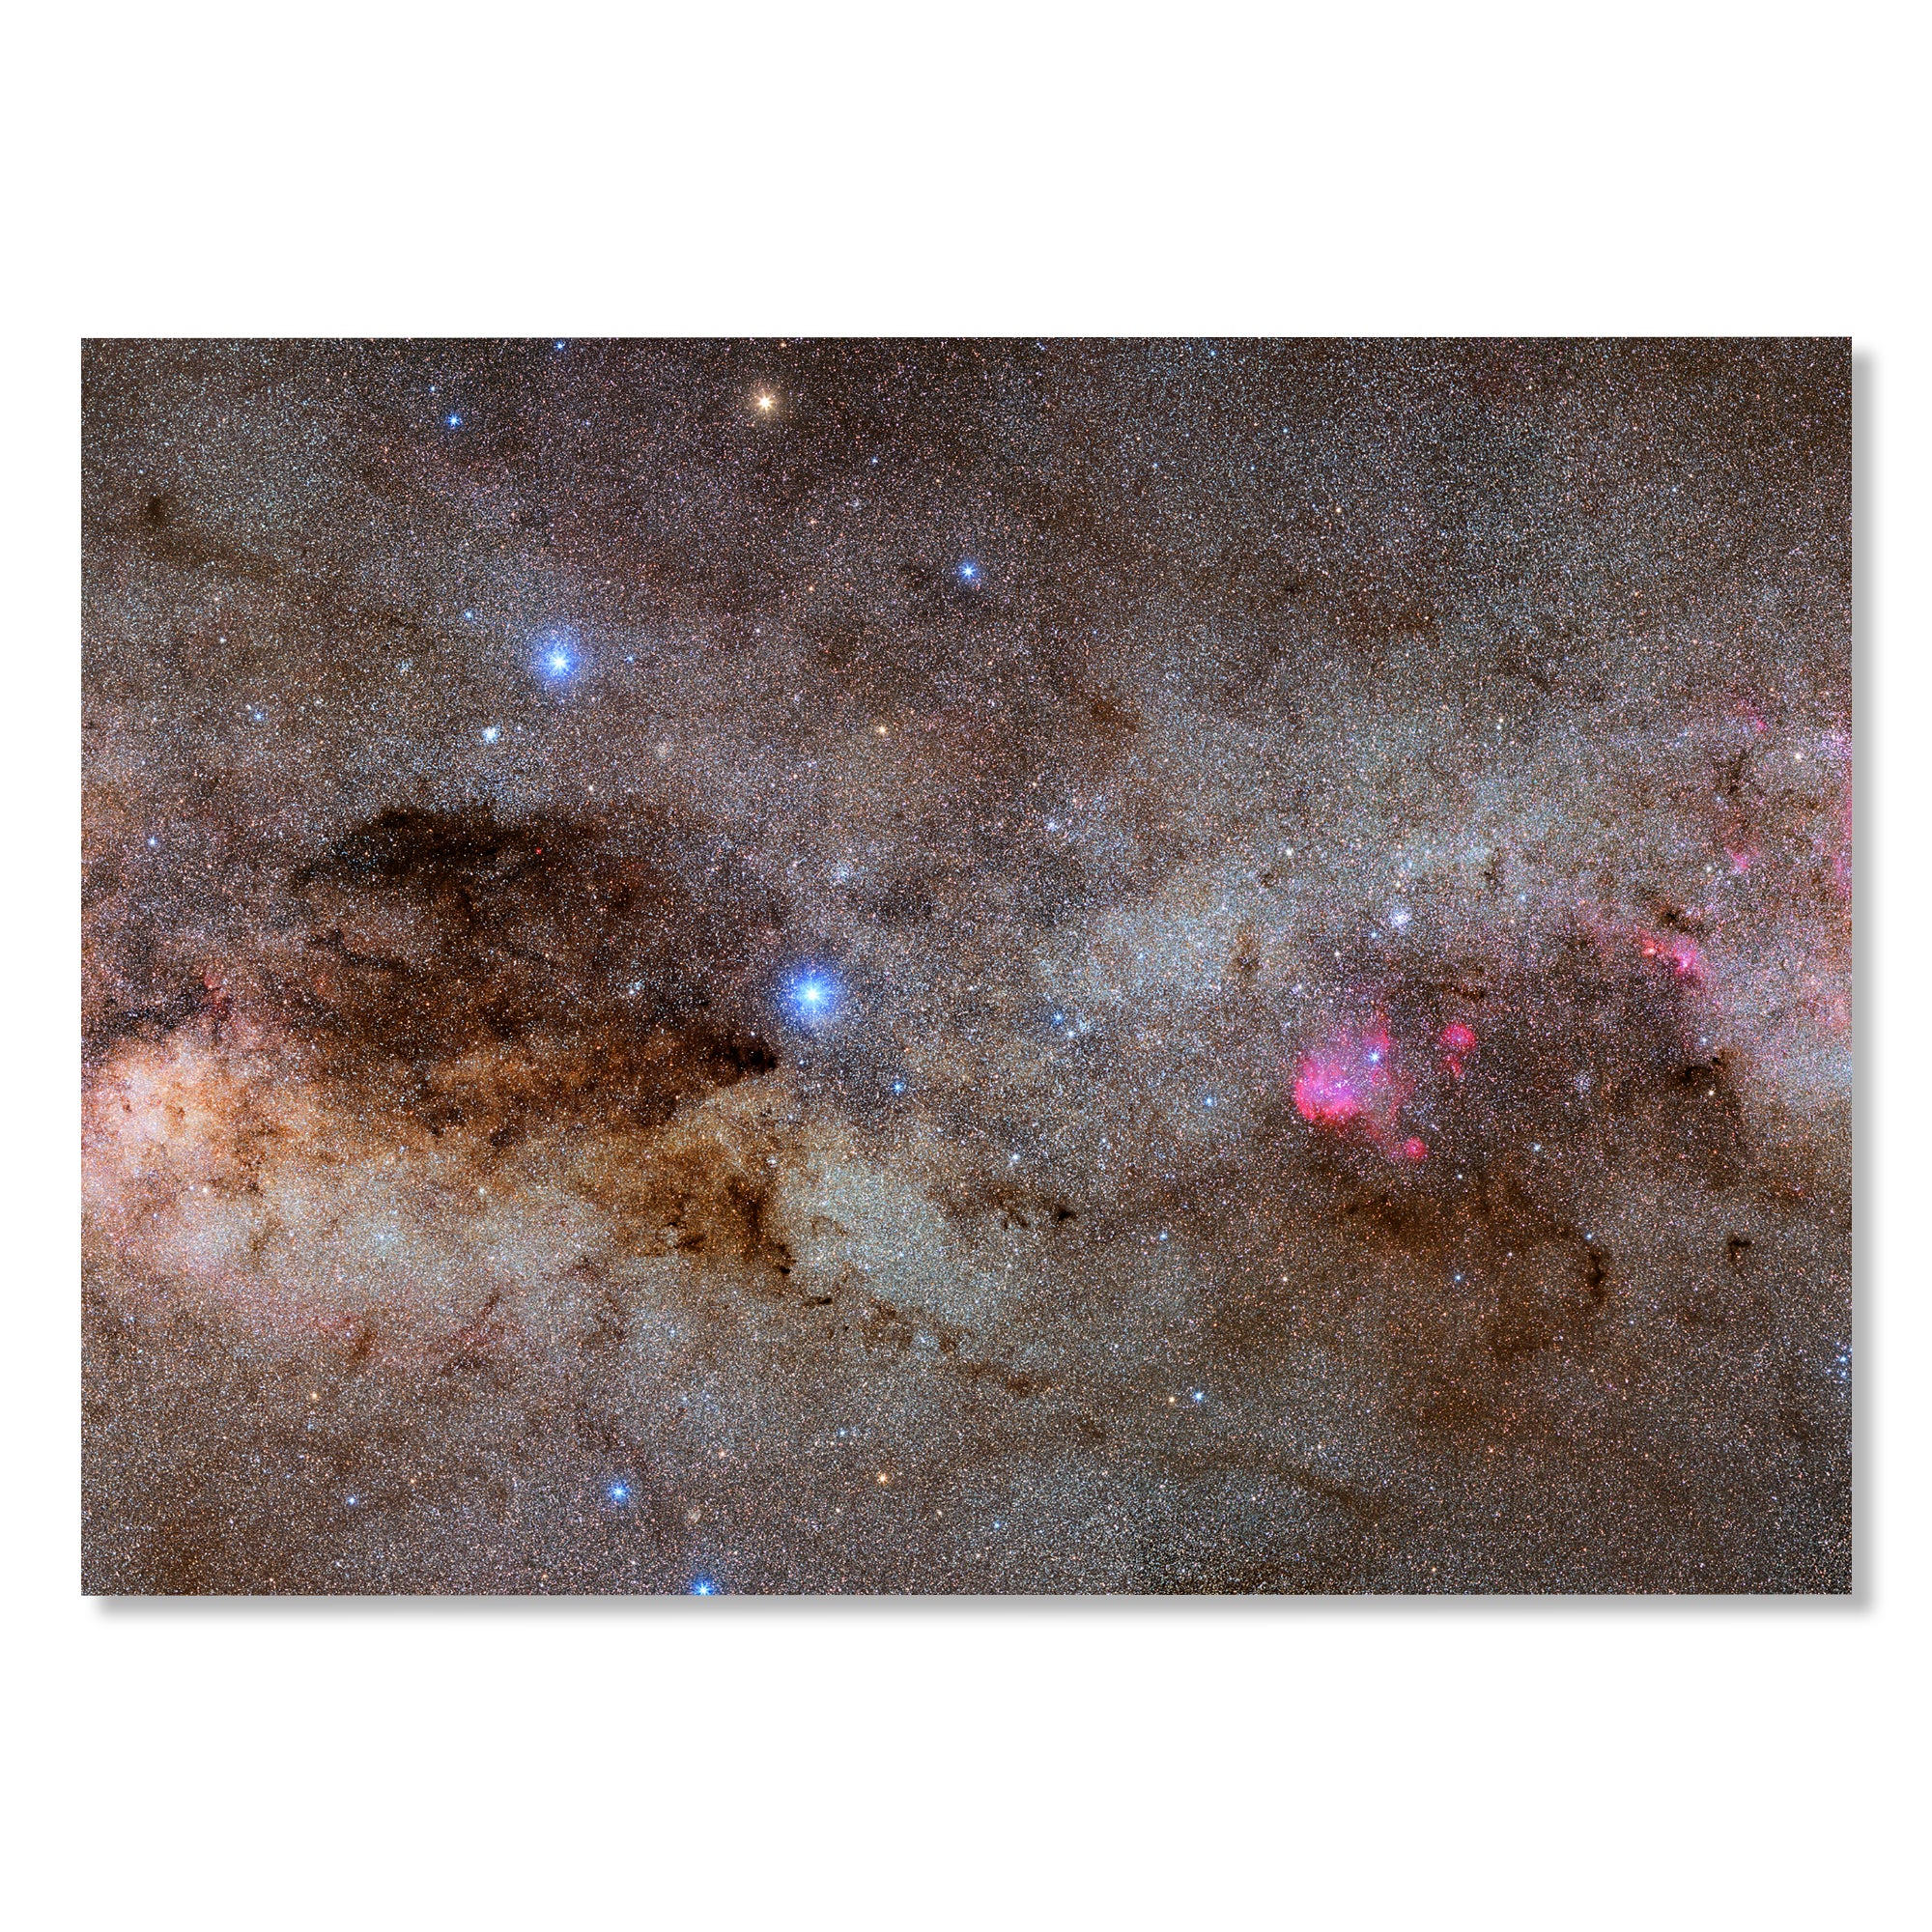 Crux and Coalsack Nebula - Gigalaxy